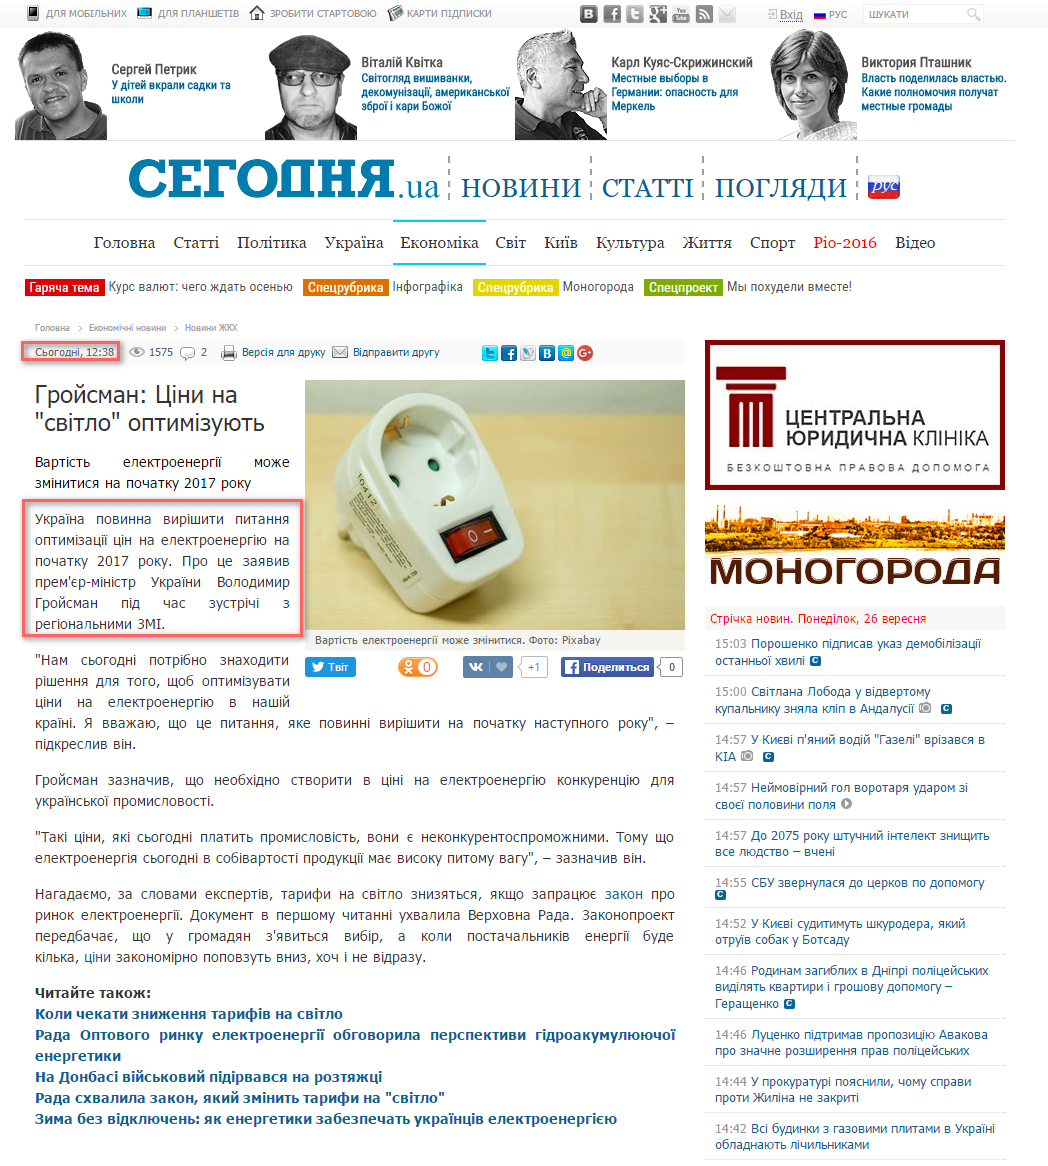 http://ukr.segodnya.ua/economics/gkh/groysman-ceny-na-svet-optimiziruyut-754903.html